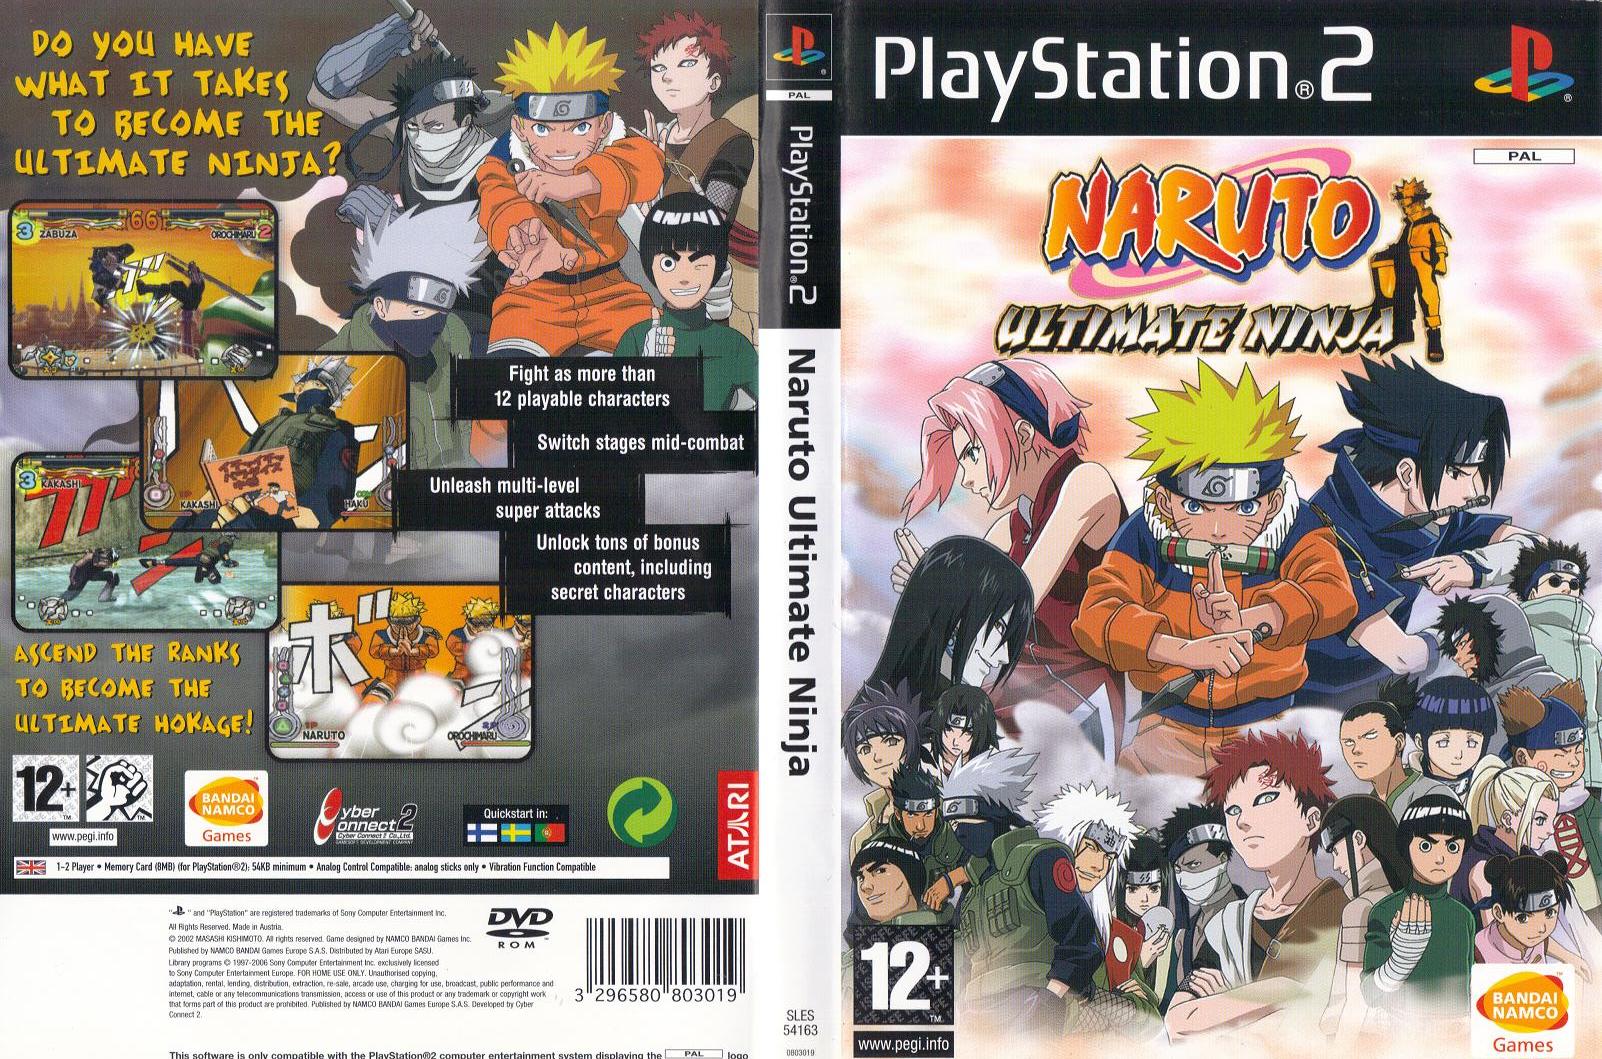 naruto-ultimate-ninja-ps2-cover